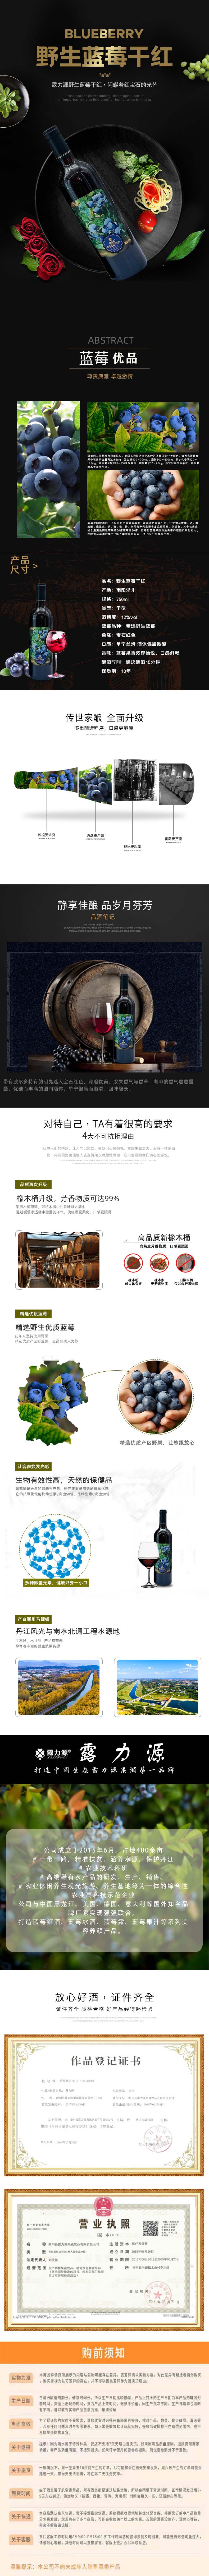 蓝莓果汁： 300ml(图1)